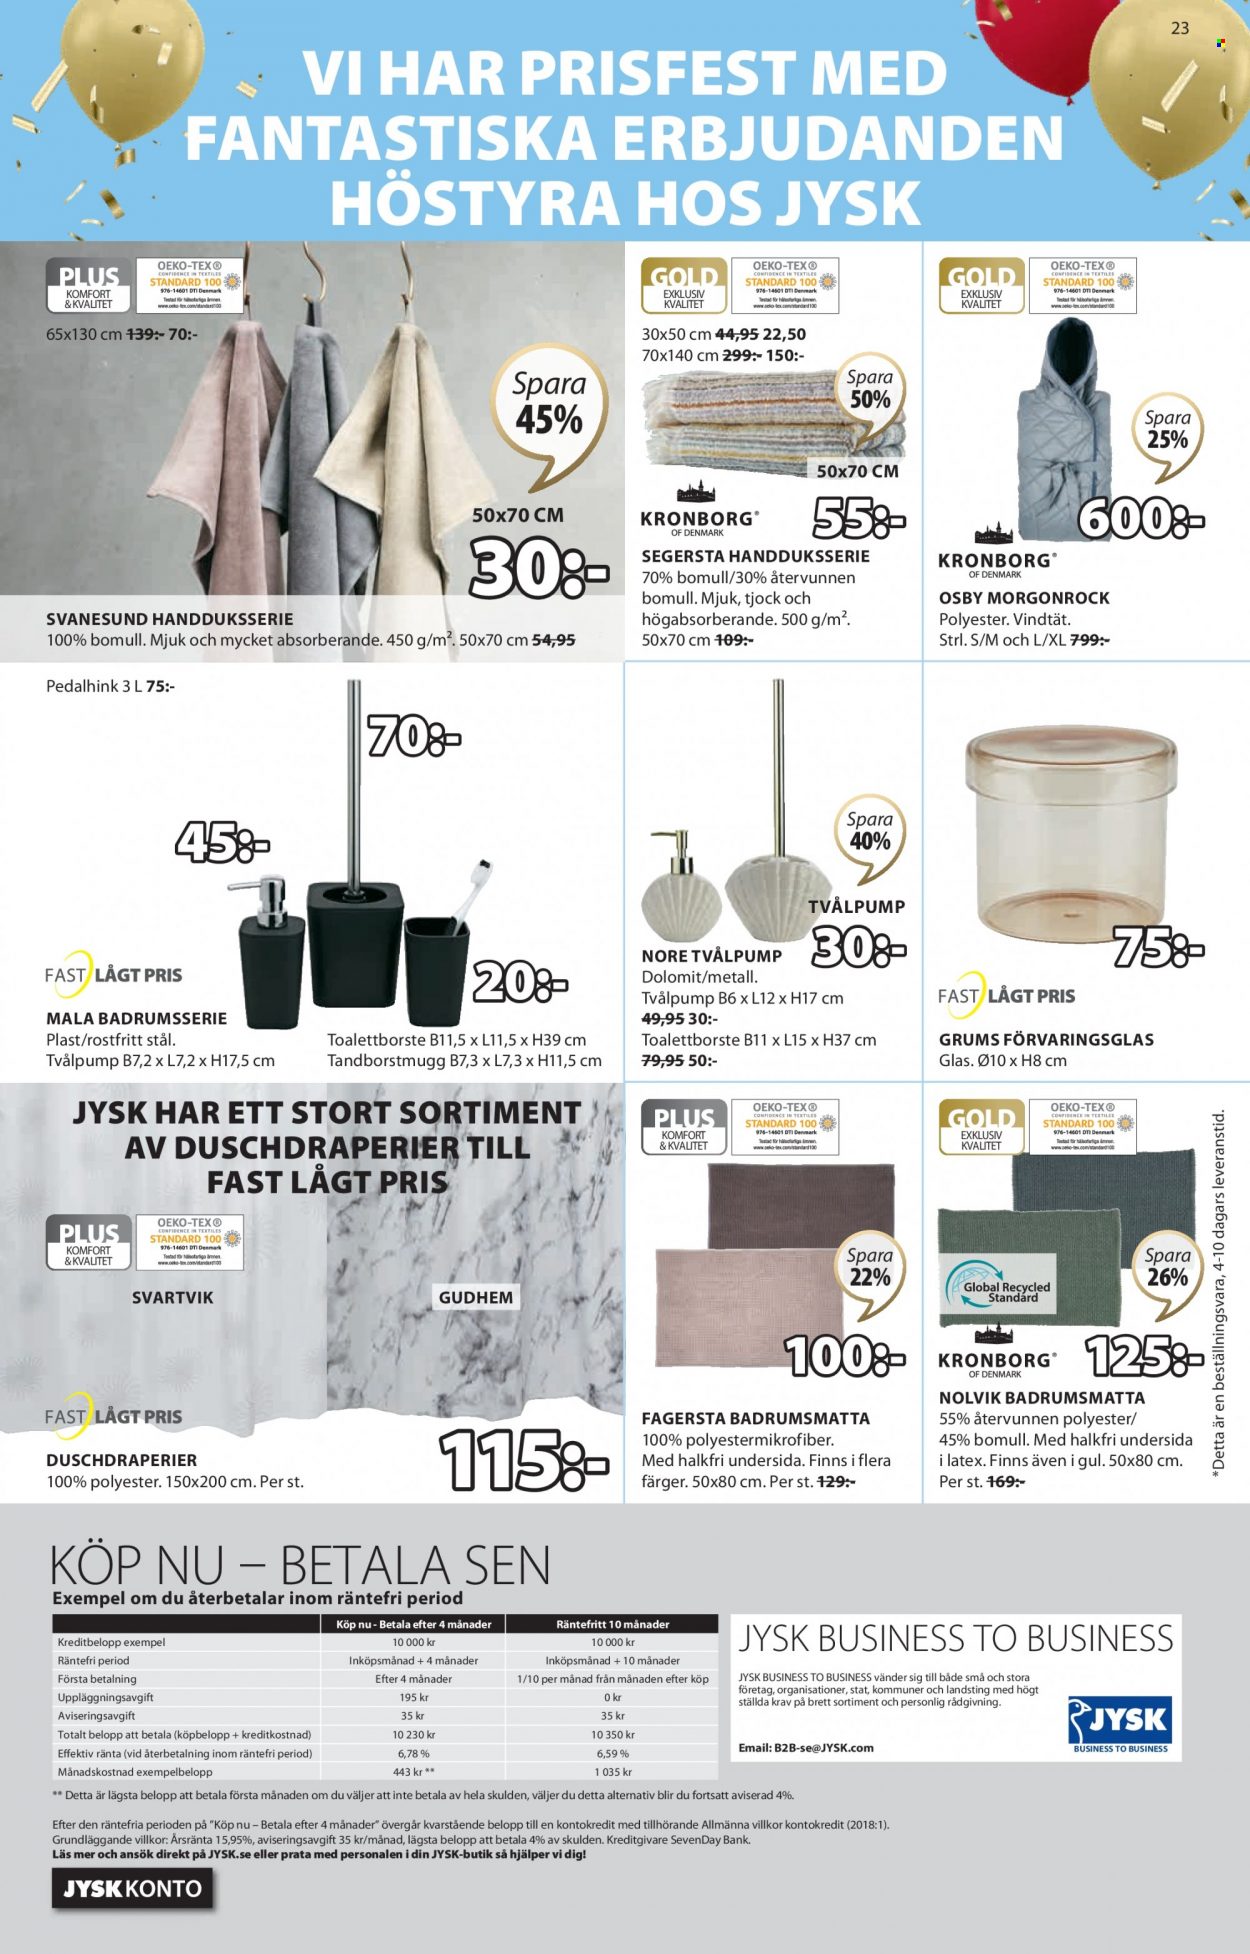 thumbnail - JYSK reklamblad - 26/9 2022 - 9/10 2022 - varor från reklamblad - bänk, tvålpump, badrumsmatta, handduk, duschdraperier. Sida 23.